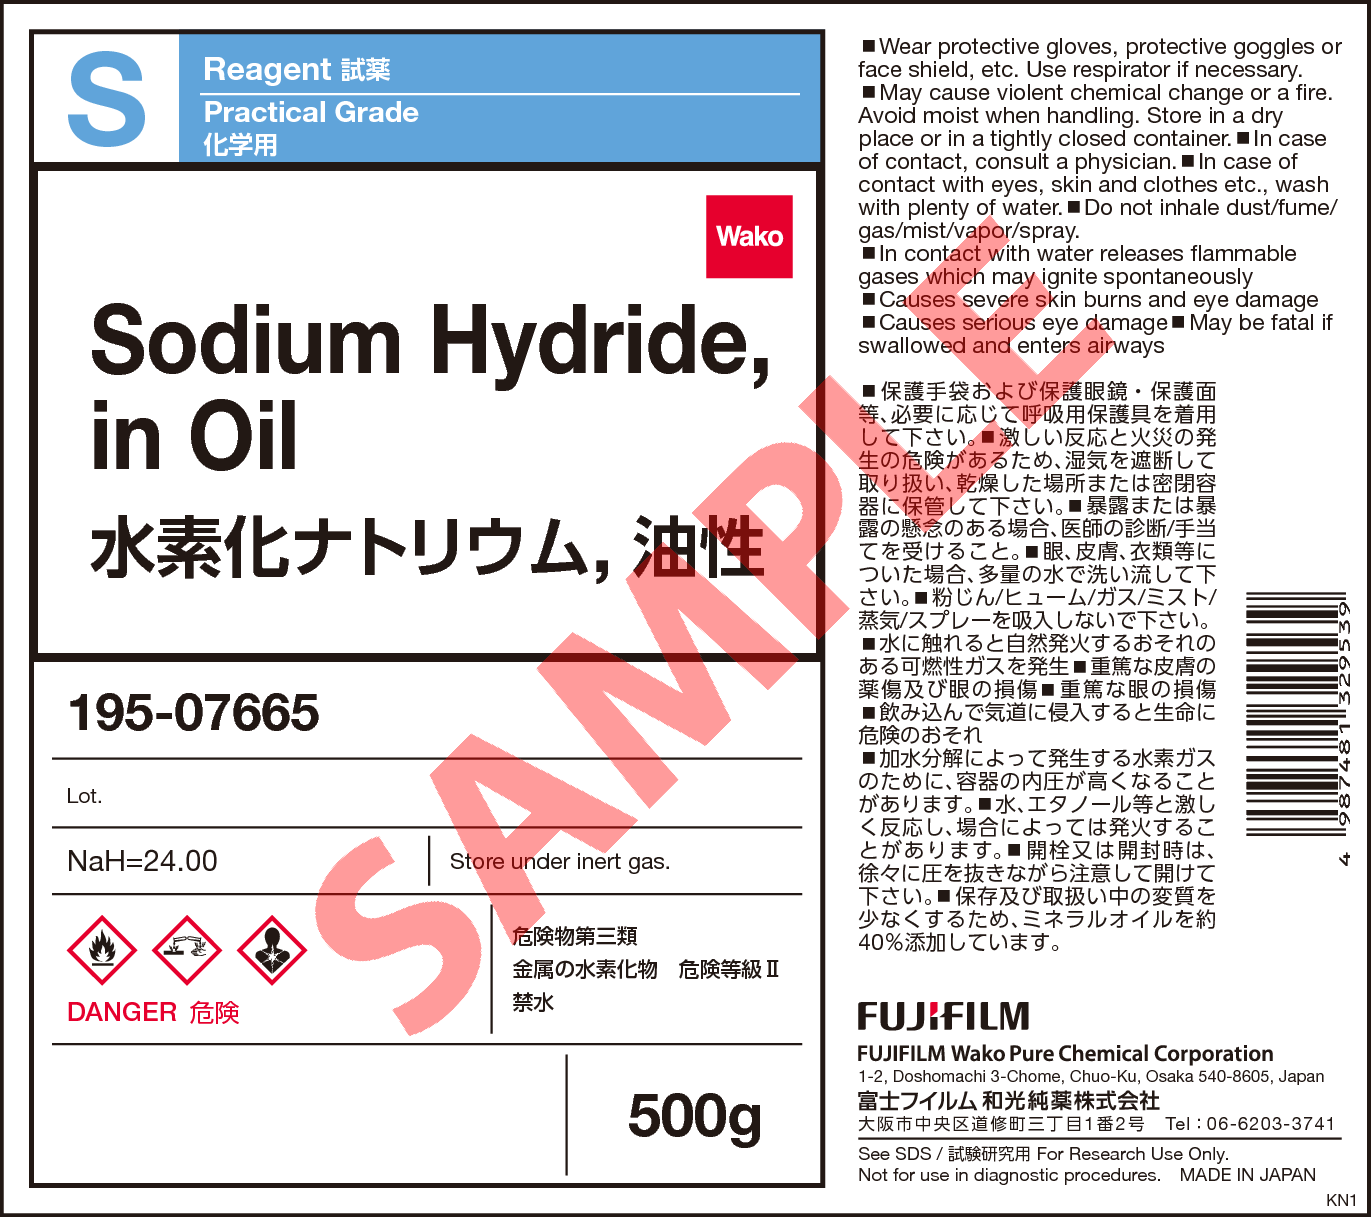 7646-69-7・水素化ナトリウム, 油性・Sodium Hydride, in Oil・191 